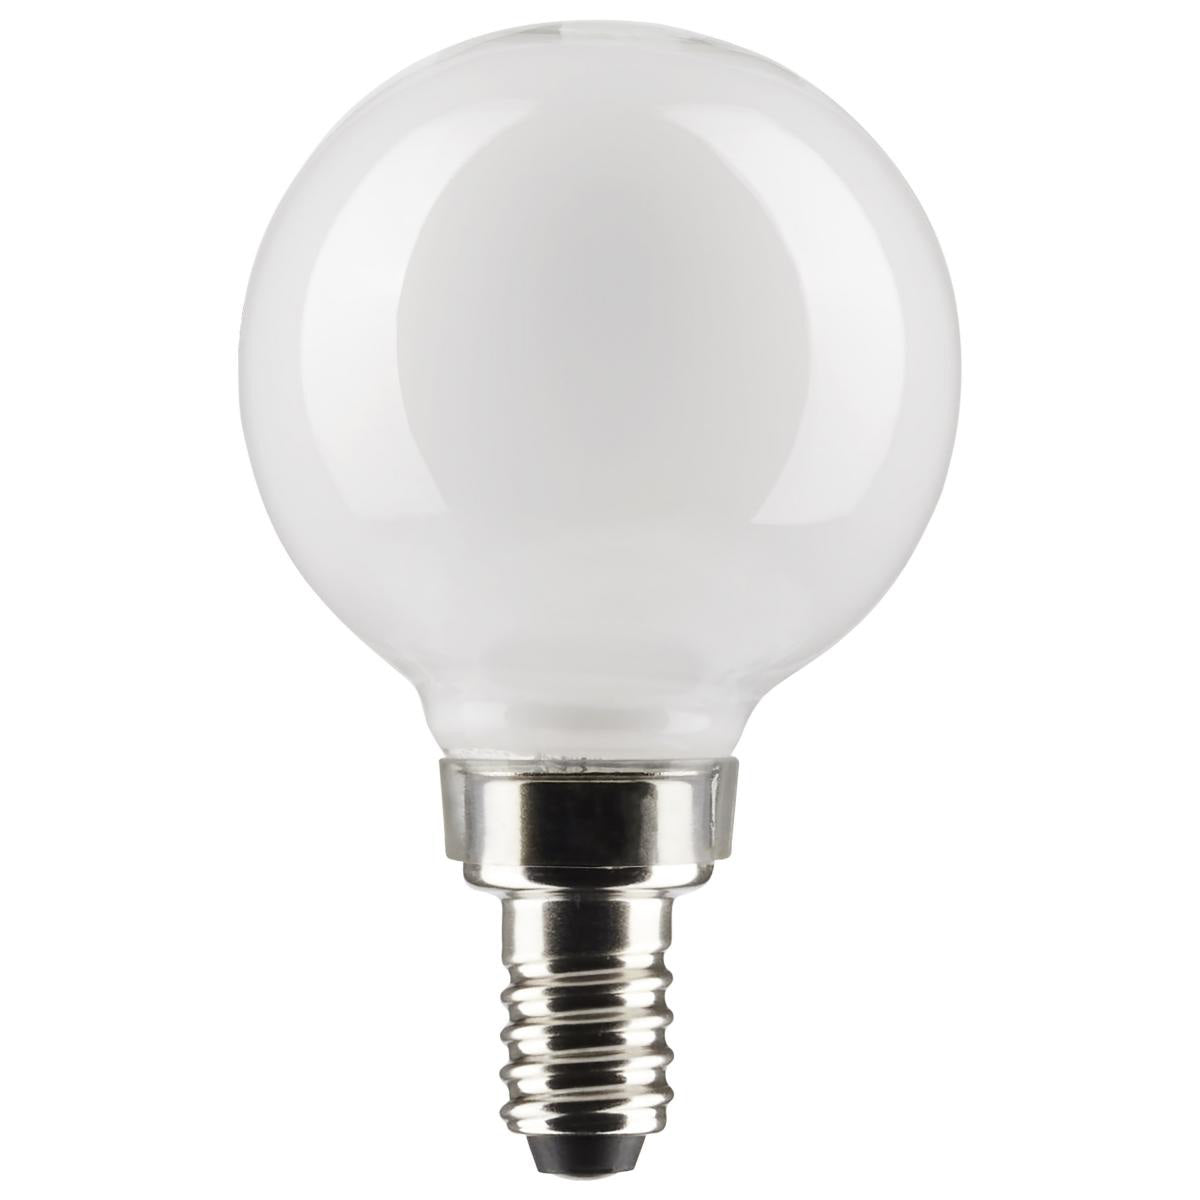 White, 25-Watt Equivalent LED Light Bulb, Candelabra E-12 Base G16.5, Dimmable (47067LED)